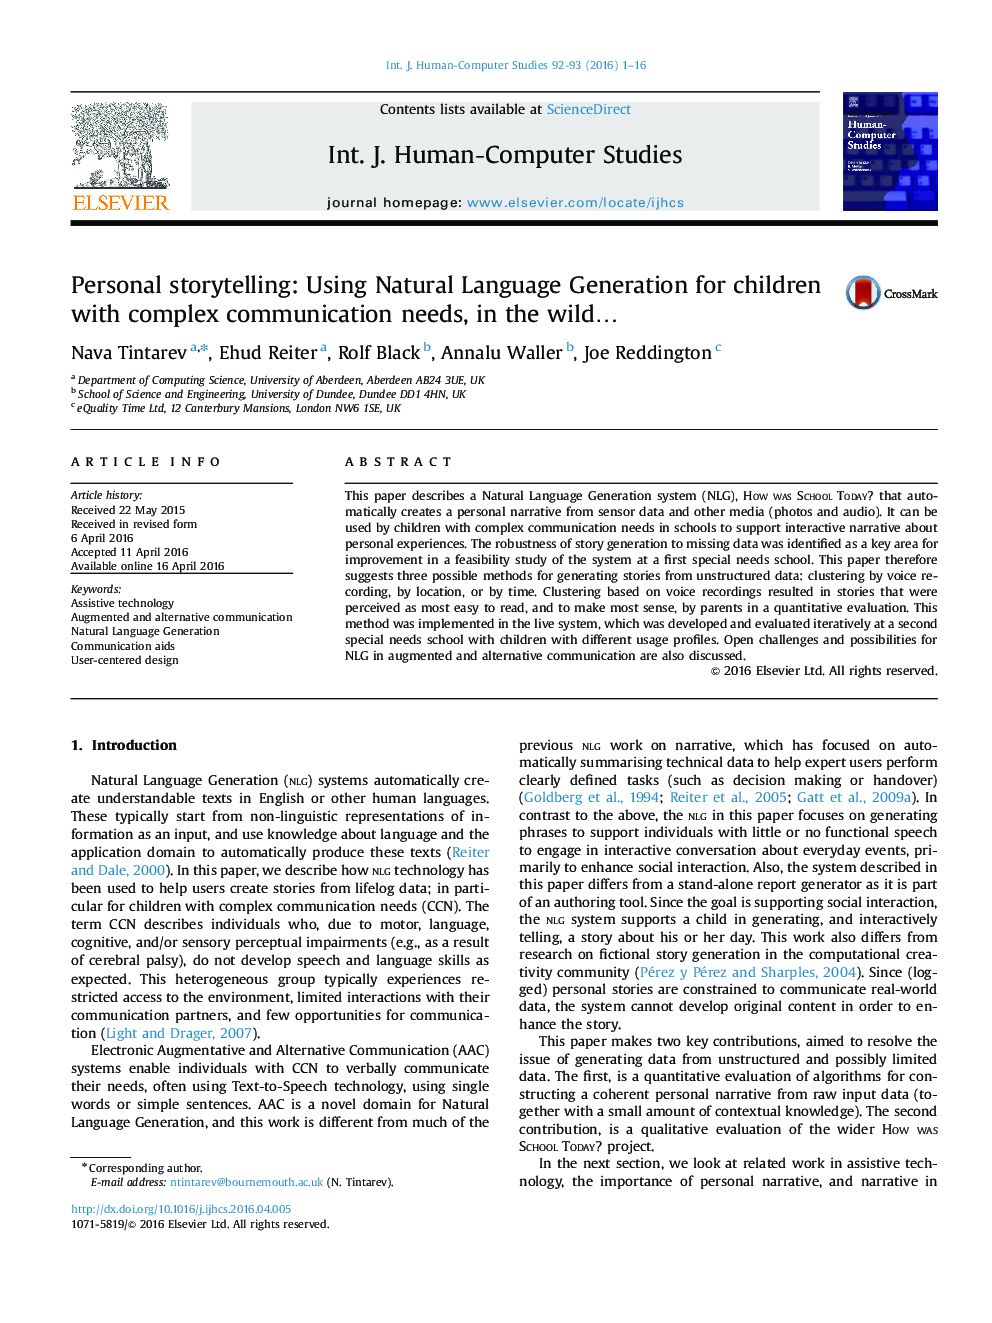 داستان سرایی شخصی: استفاده از ایجاد زبان طبیعی برای کودکان با نیازهای ارتباطی پیچیده در حیات وحش ...